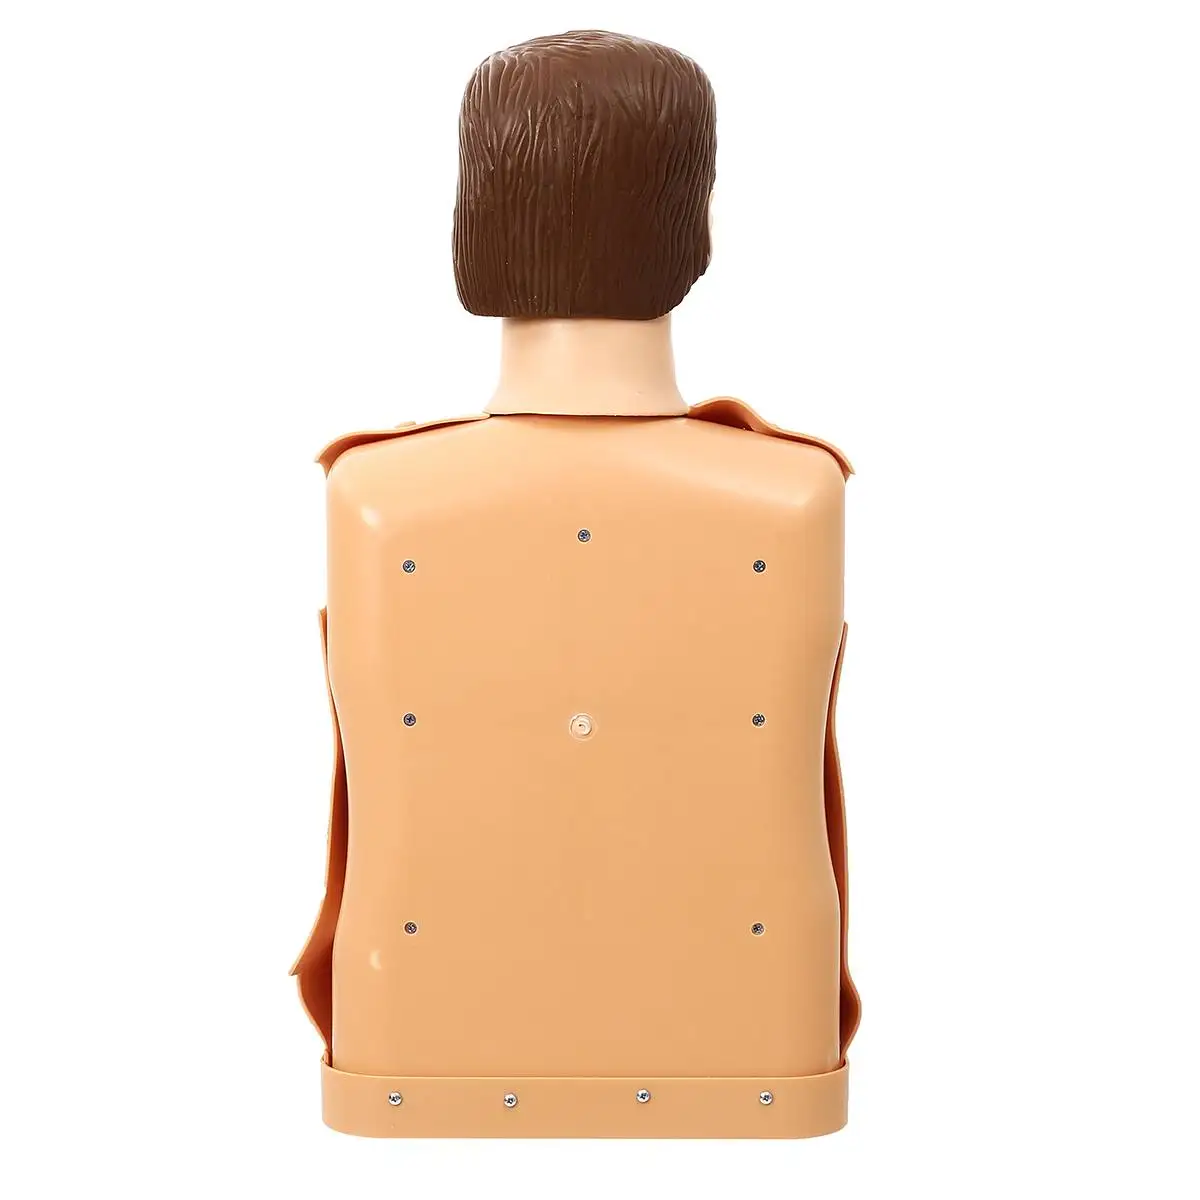 70x22x34 см Обхват груди: тренировочный манекен CPR Профессиональный сестринского Подготовки манекена медицинская модель человека тренировка скорой помощи новые модели